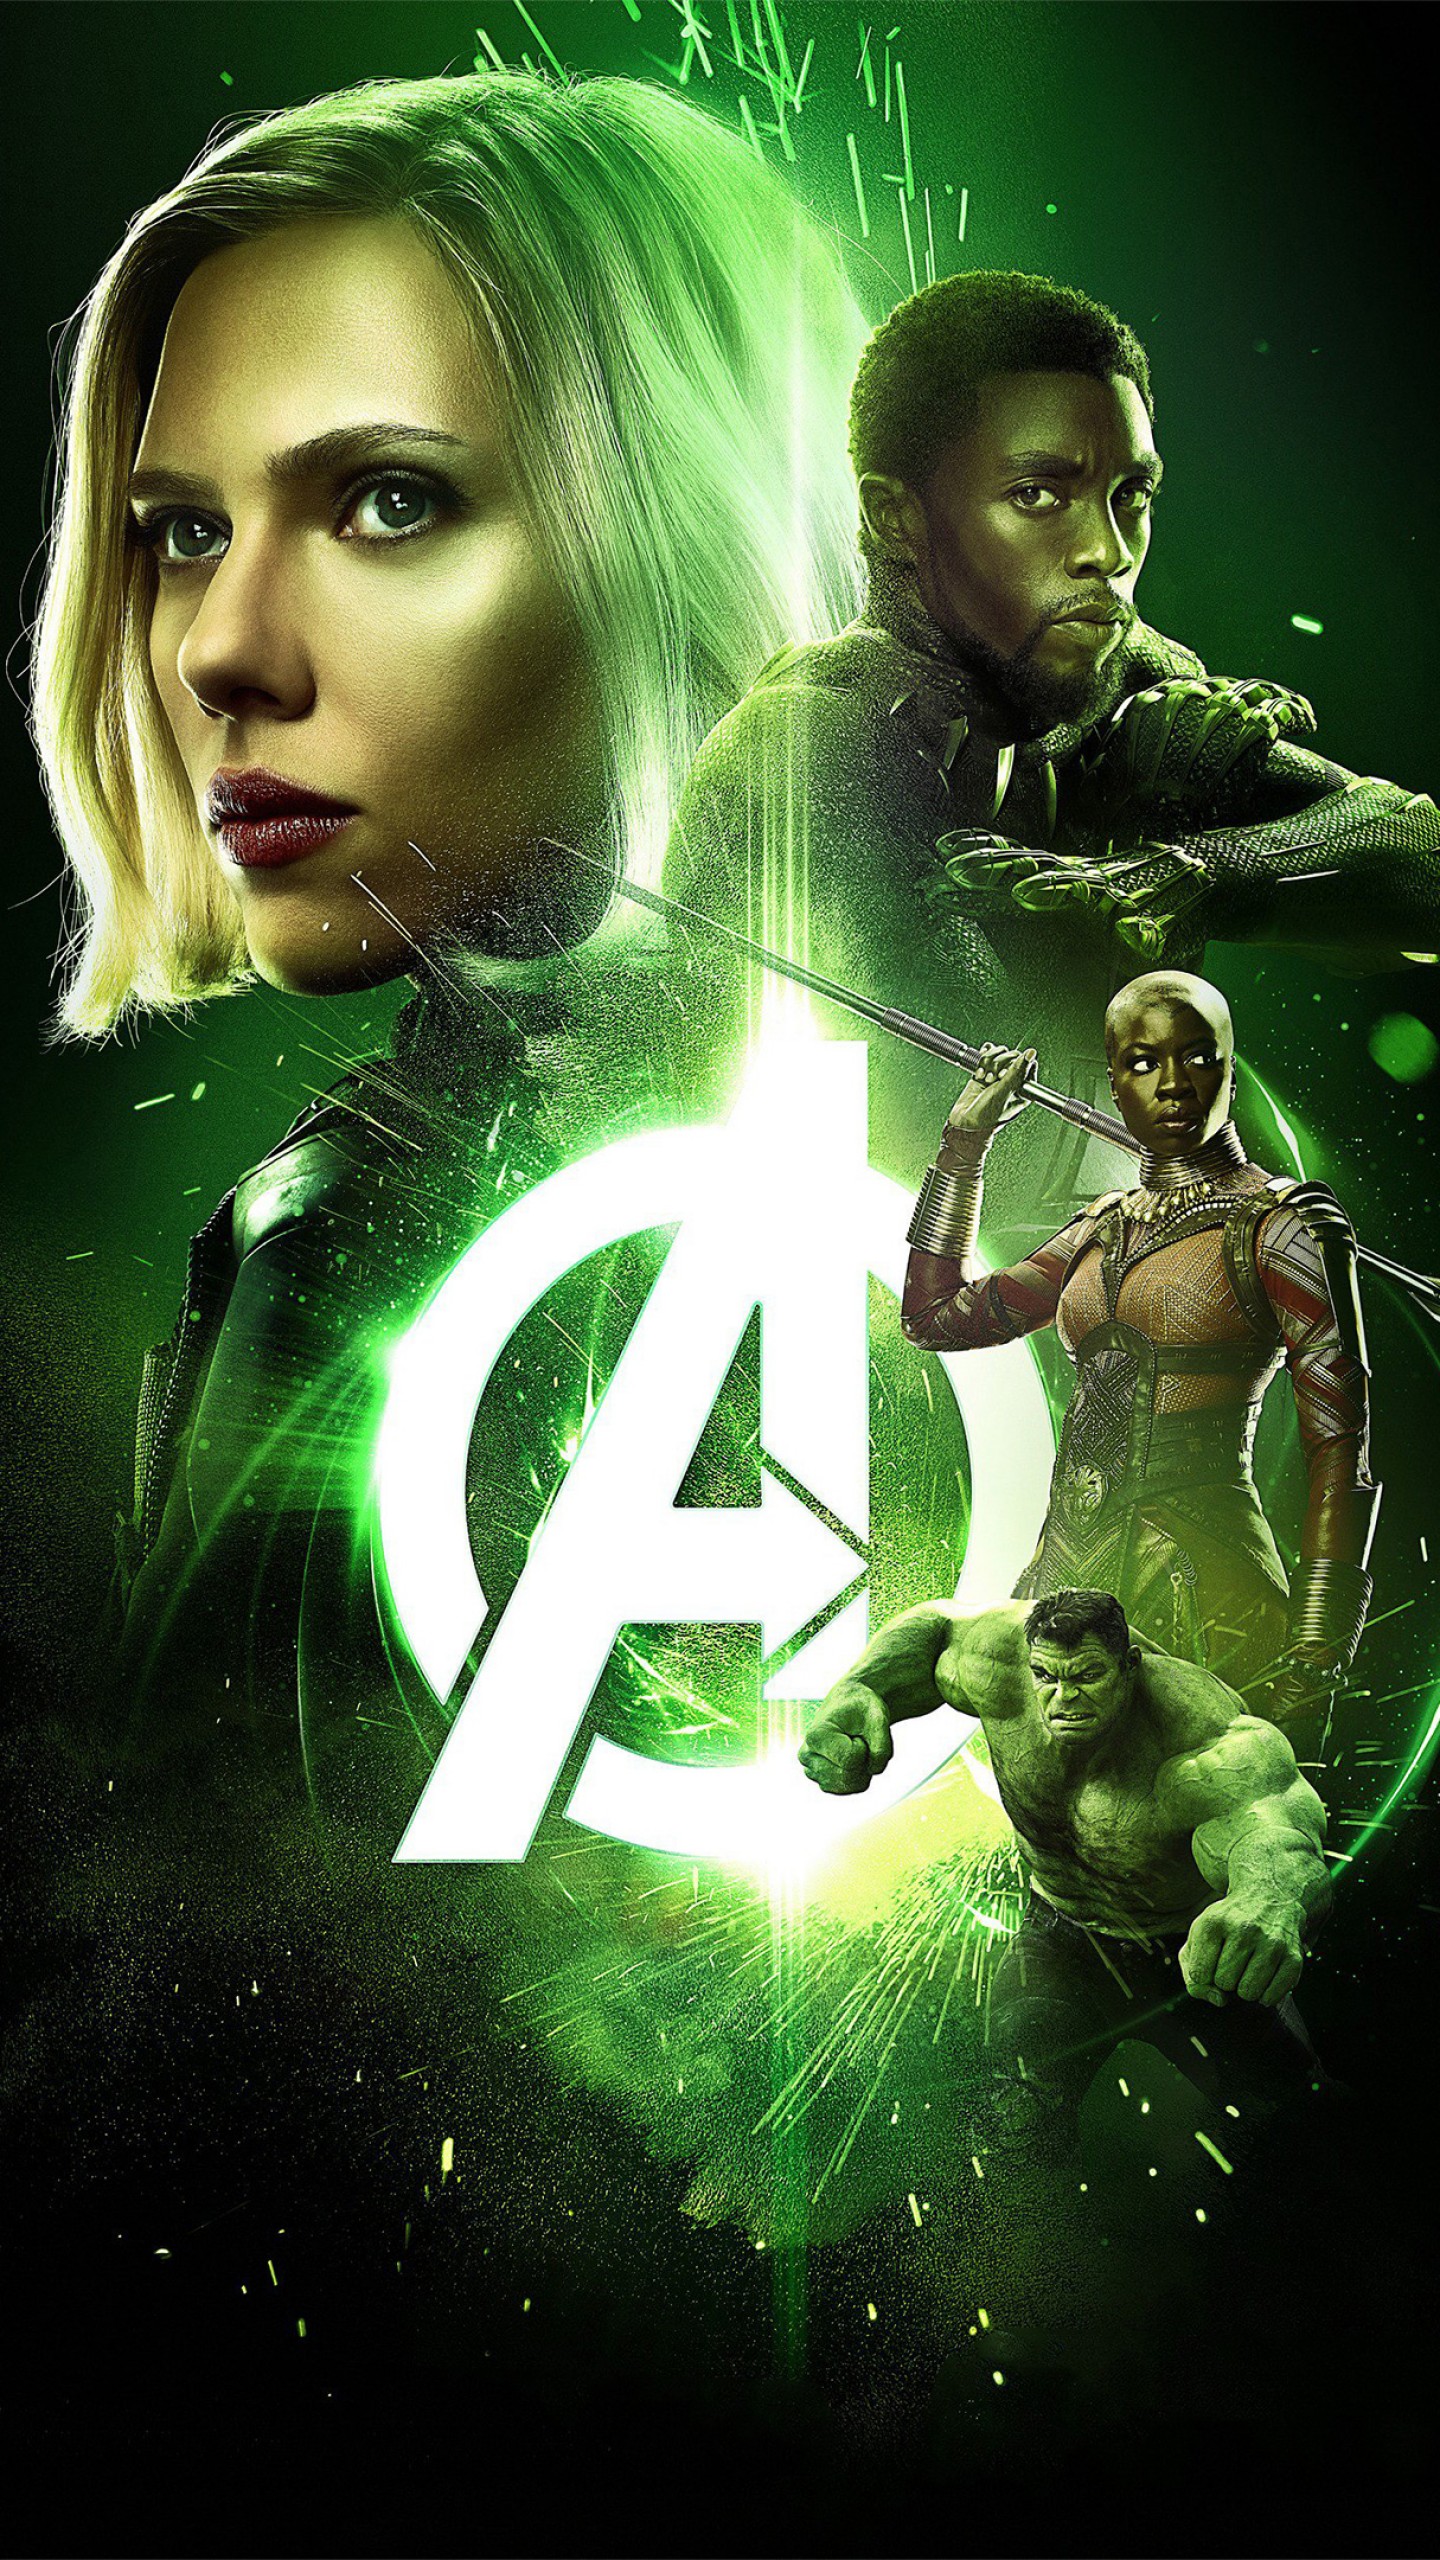 Wallpaper Avengers: Infinity War, Black Widow, Scarlett Johansson